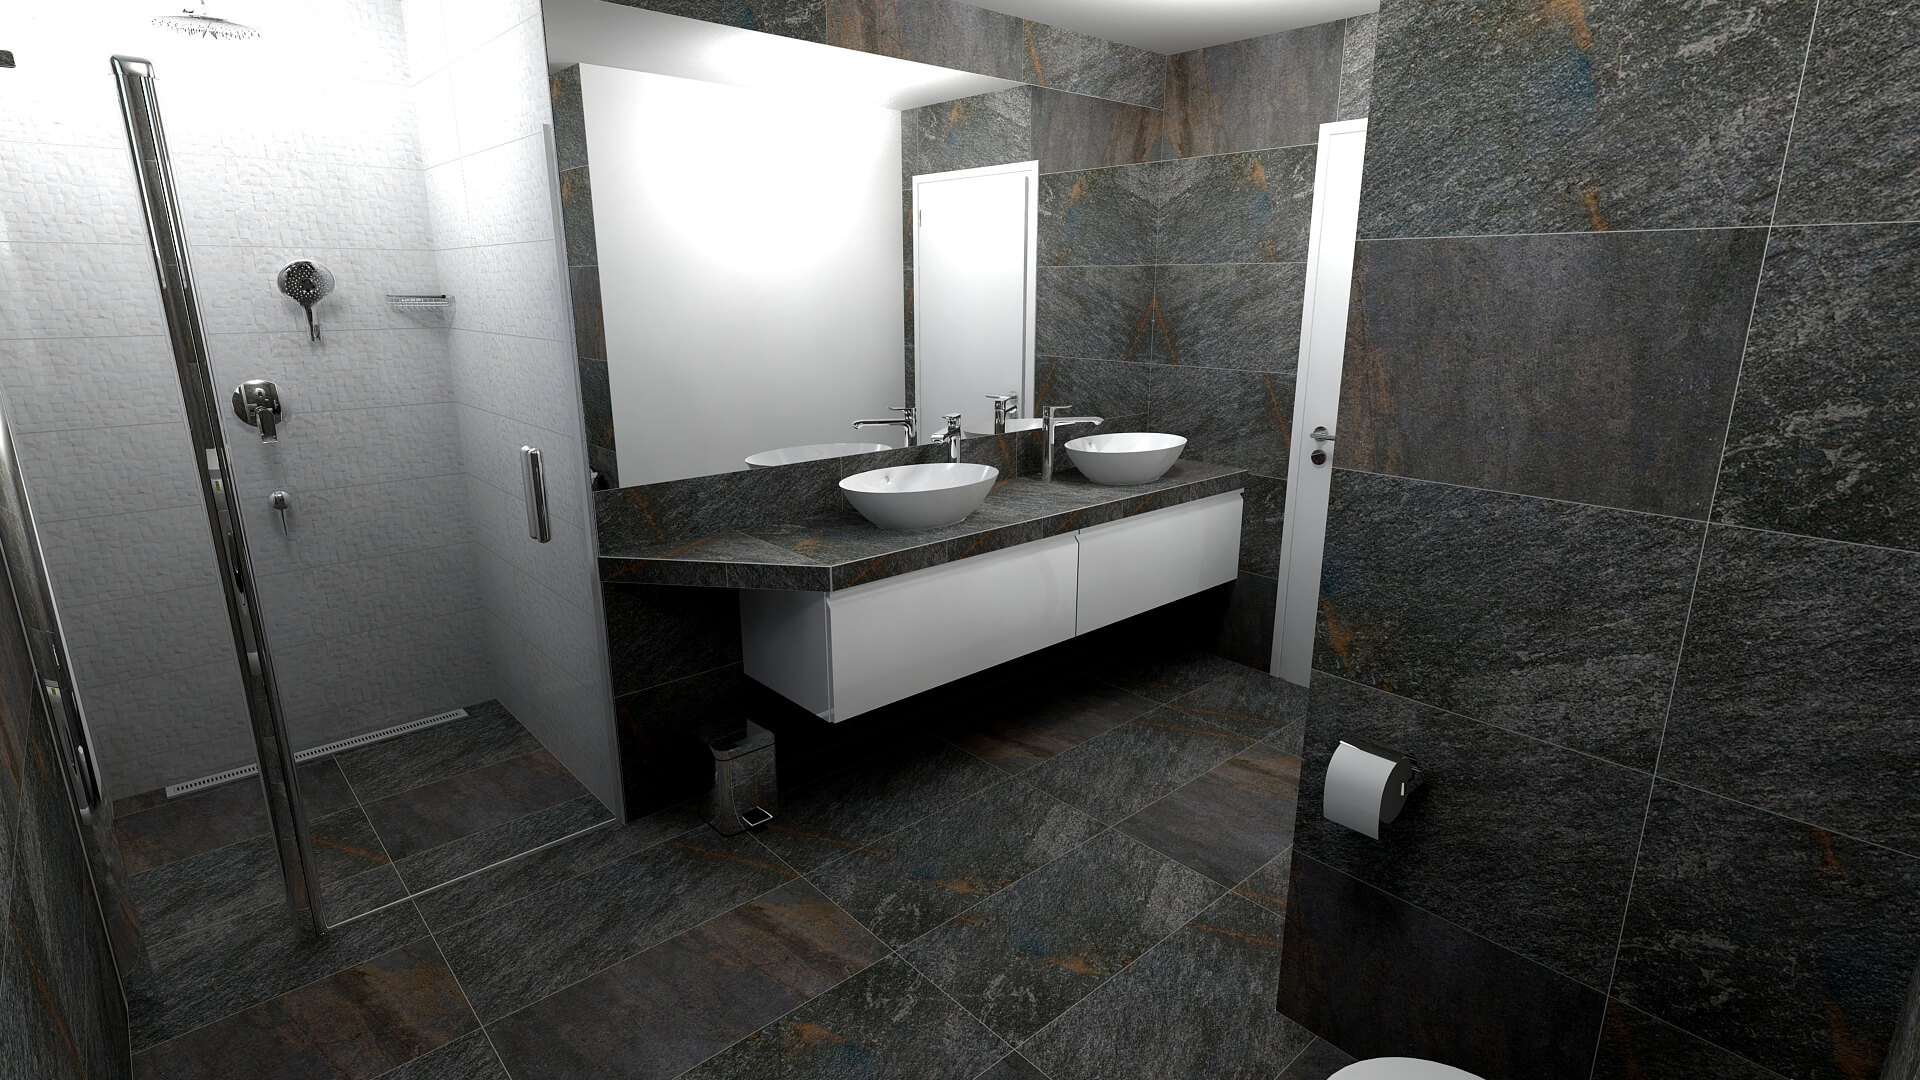 Koupelna z keramické dlažby Walks 1.0 v tmavém designu